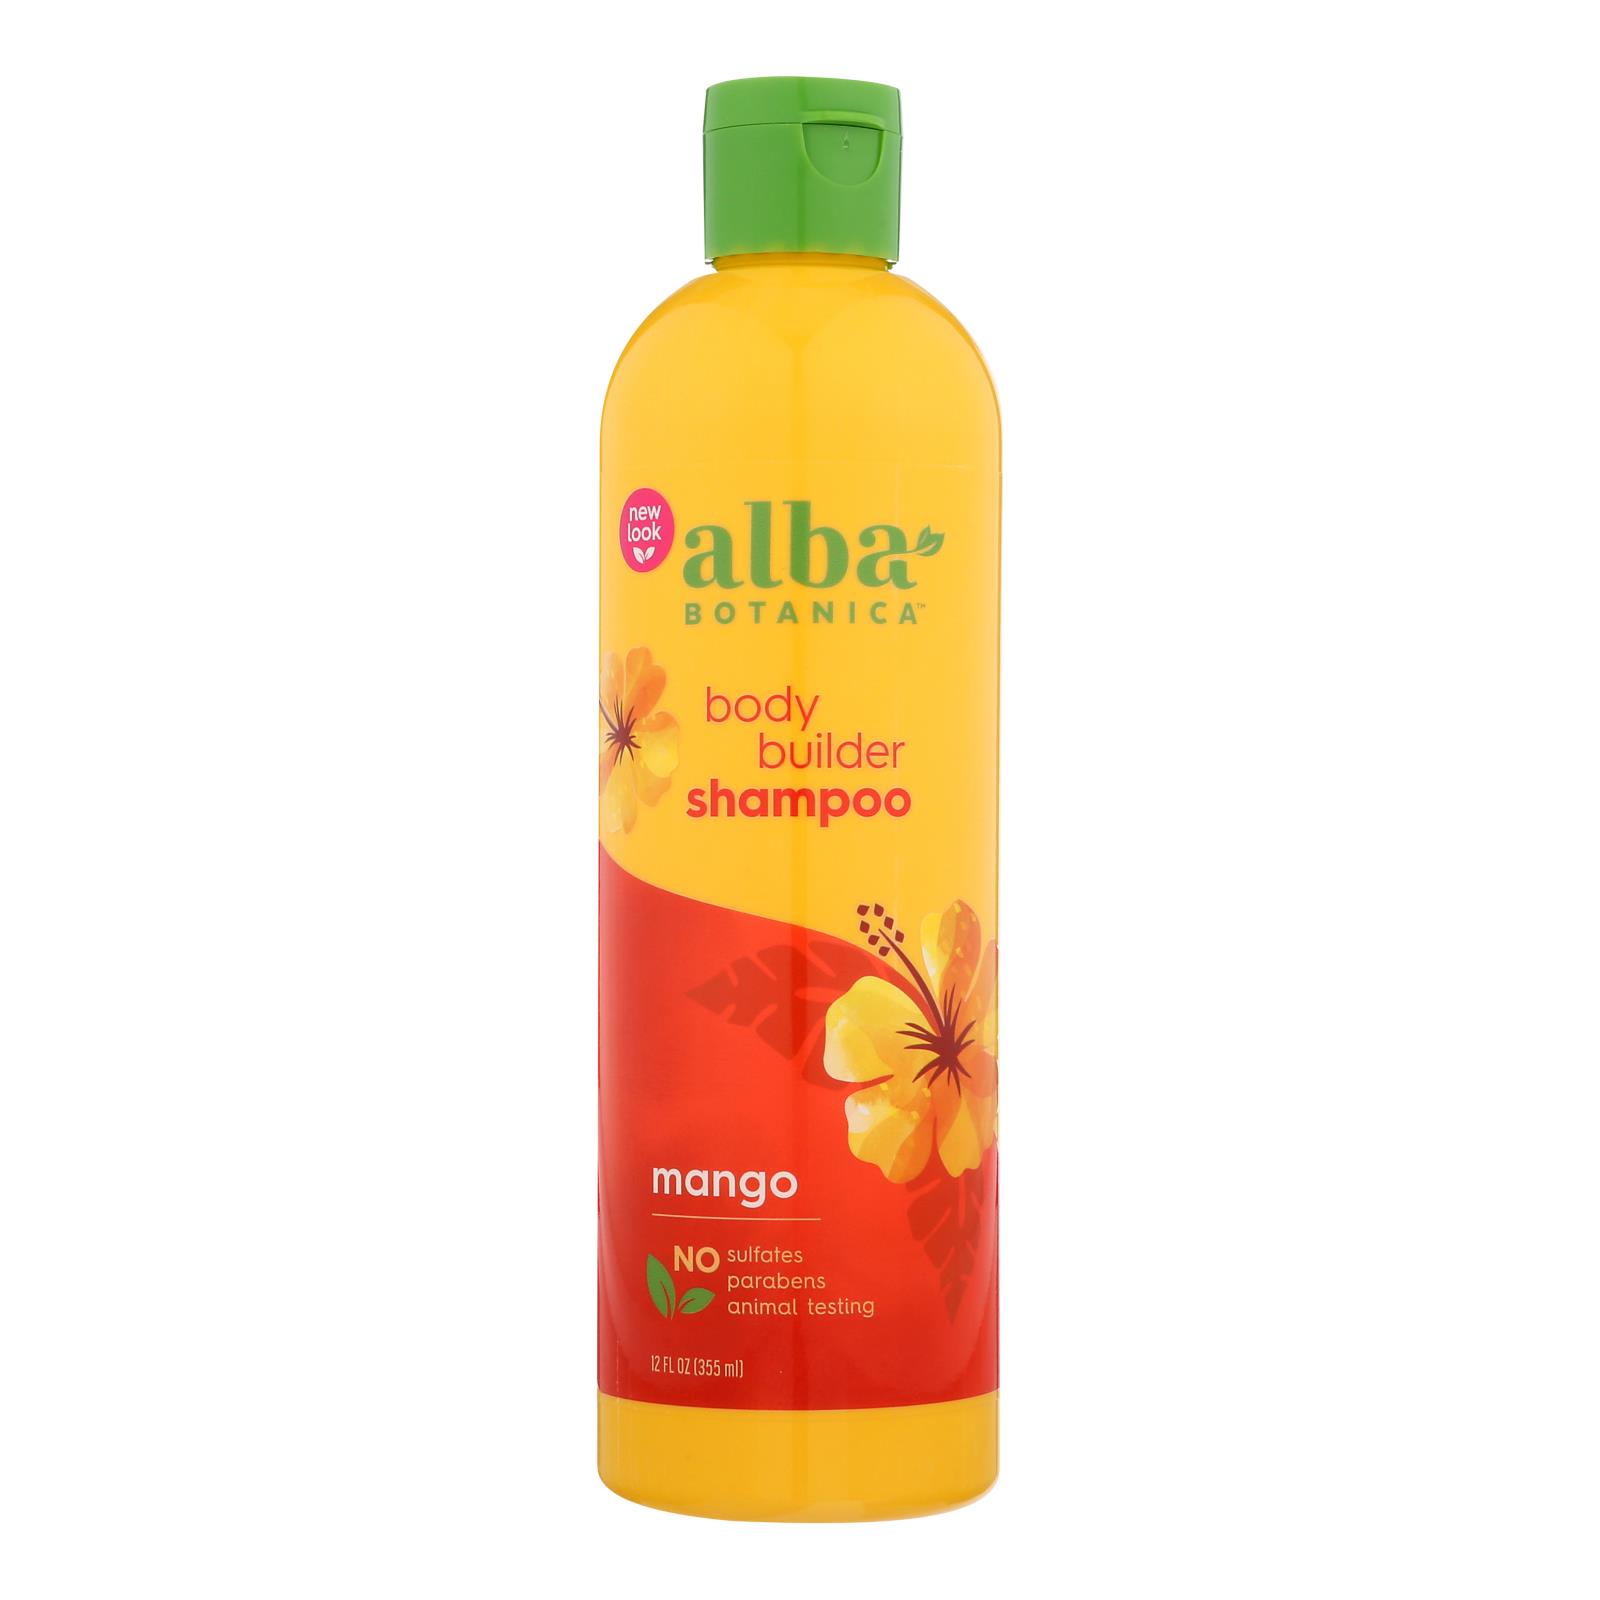 Alba Botanica Body Builder Shampoo, Mango, 12 oz. - image 1 of 3